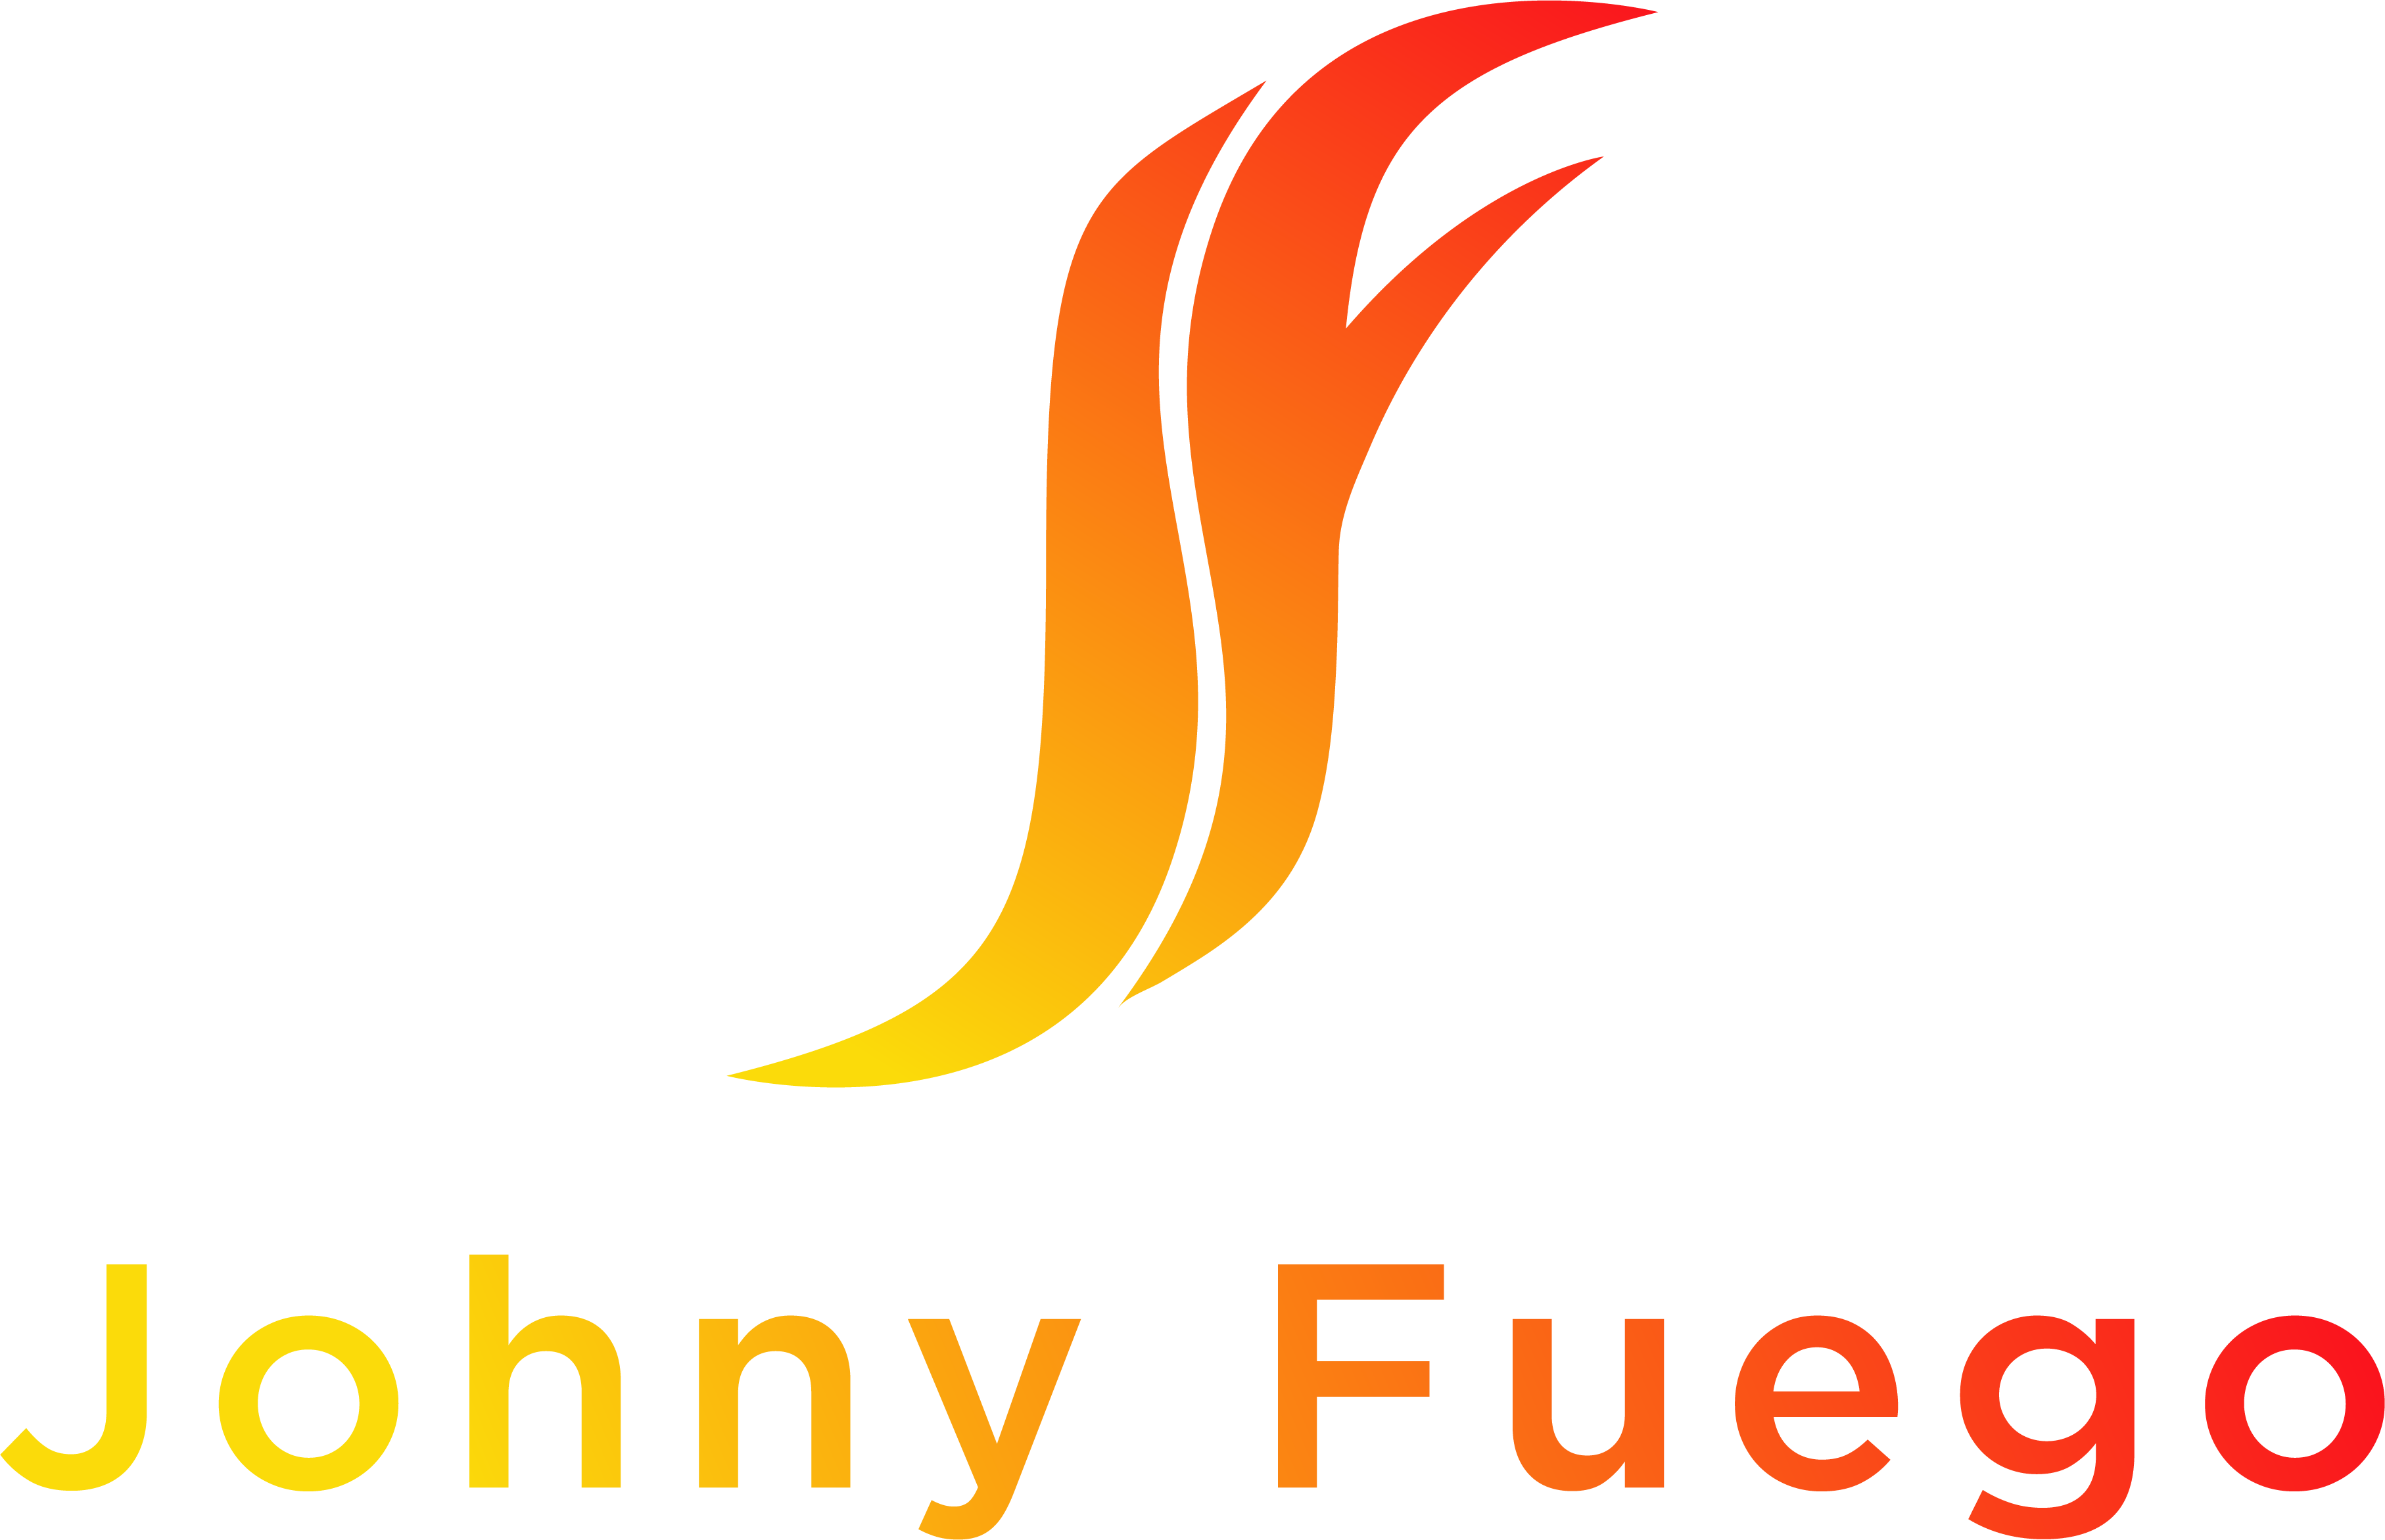 Johny Fuego